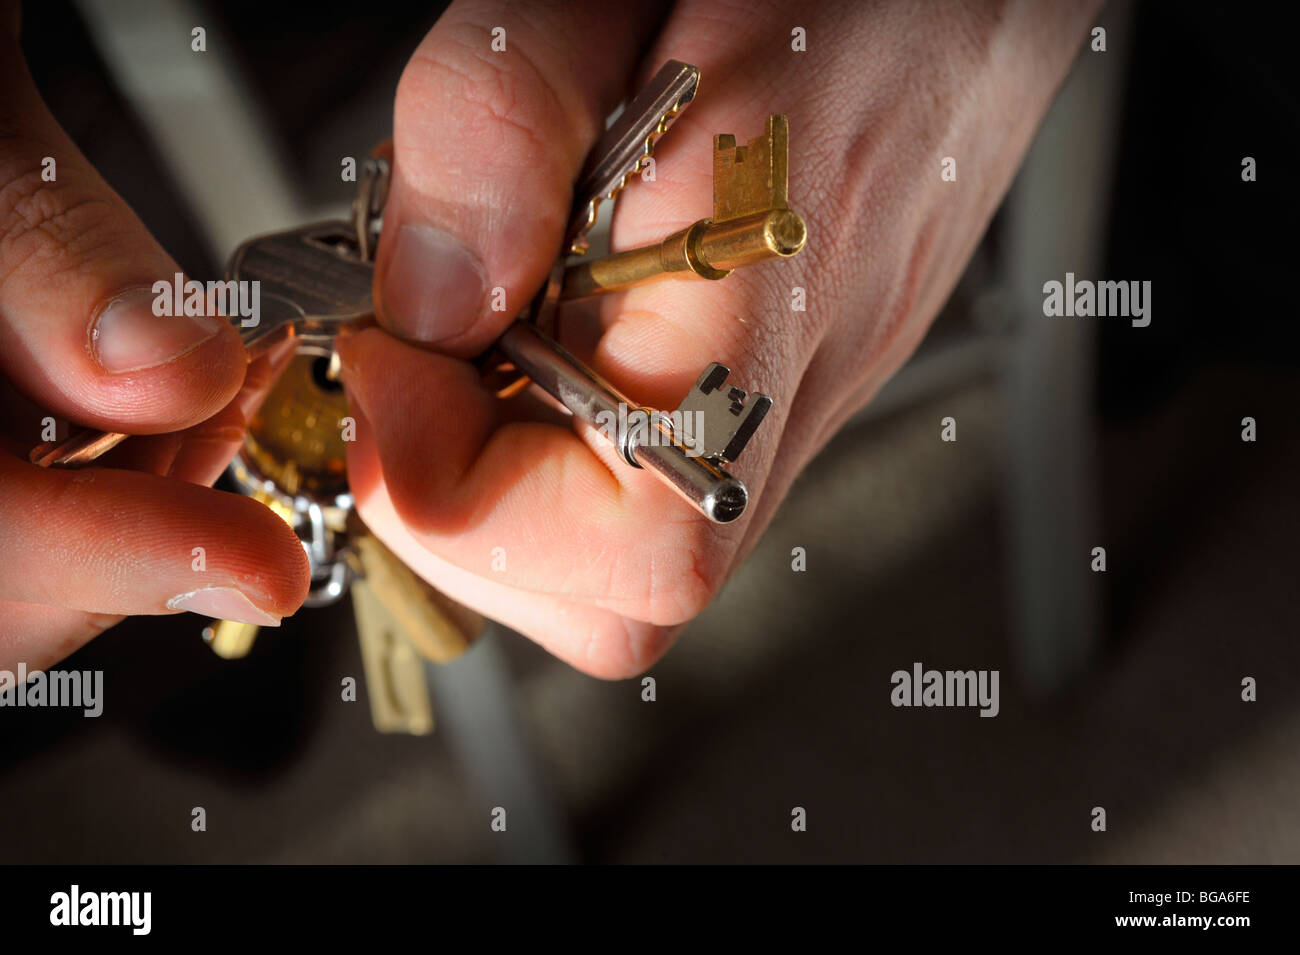 Sécurité à la maison : un trousseau de clés entre les mains de l'homme. Photo Jim Holden. Banque D'Images